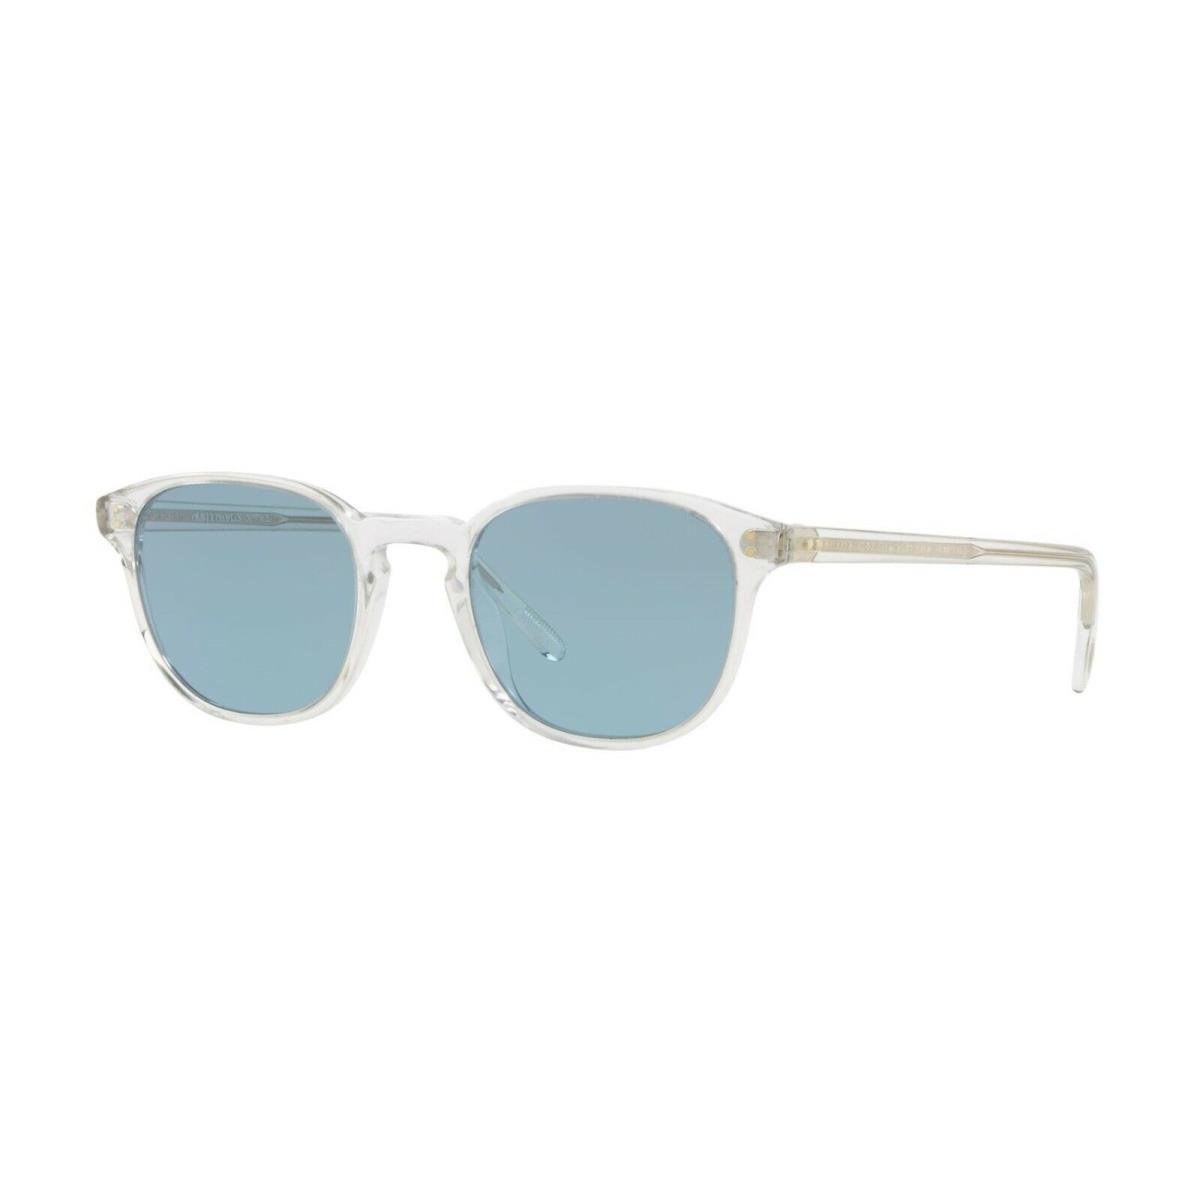 Oliver Peoples Fairmont OV 5219S Crystal/cobalto 1101/56 Sunglasses - Frame: , Lens: Blue